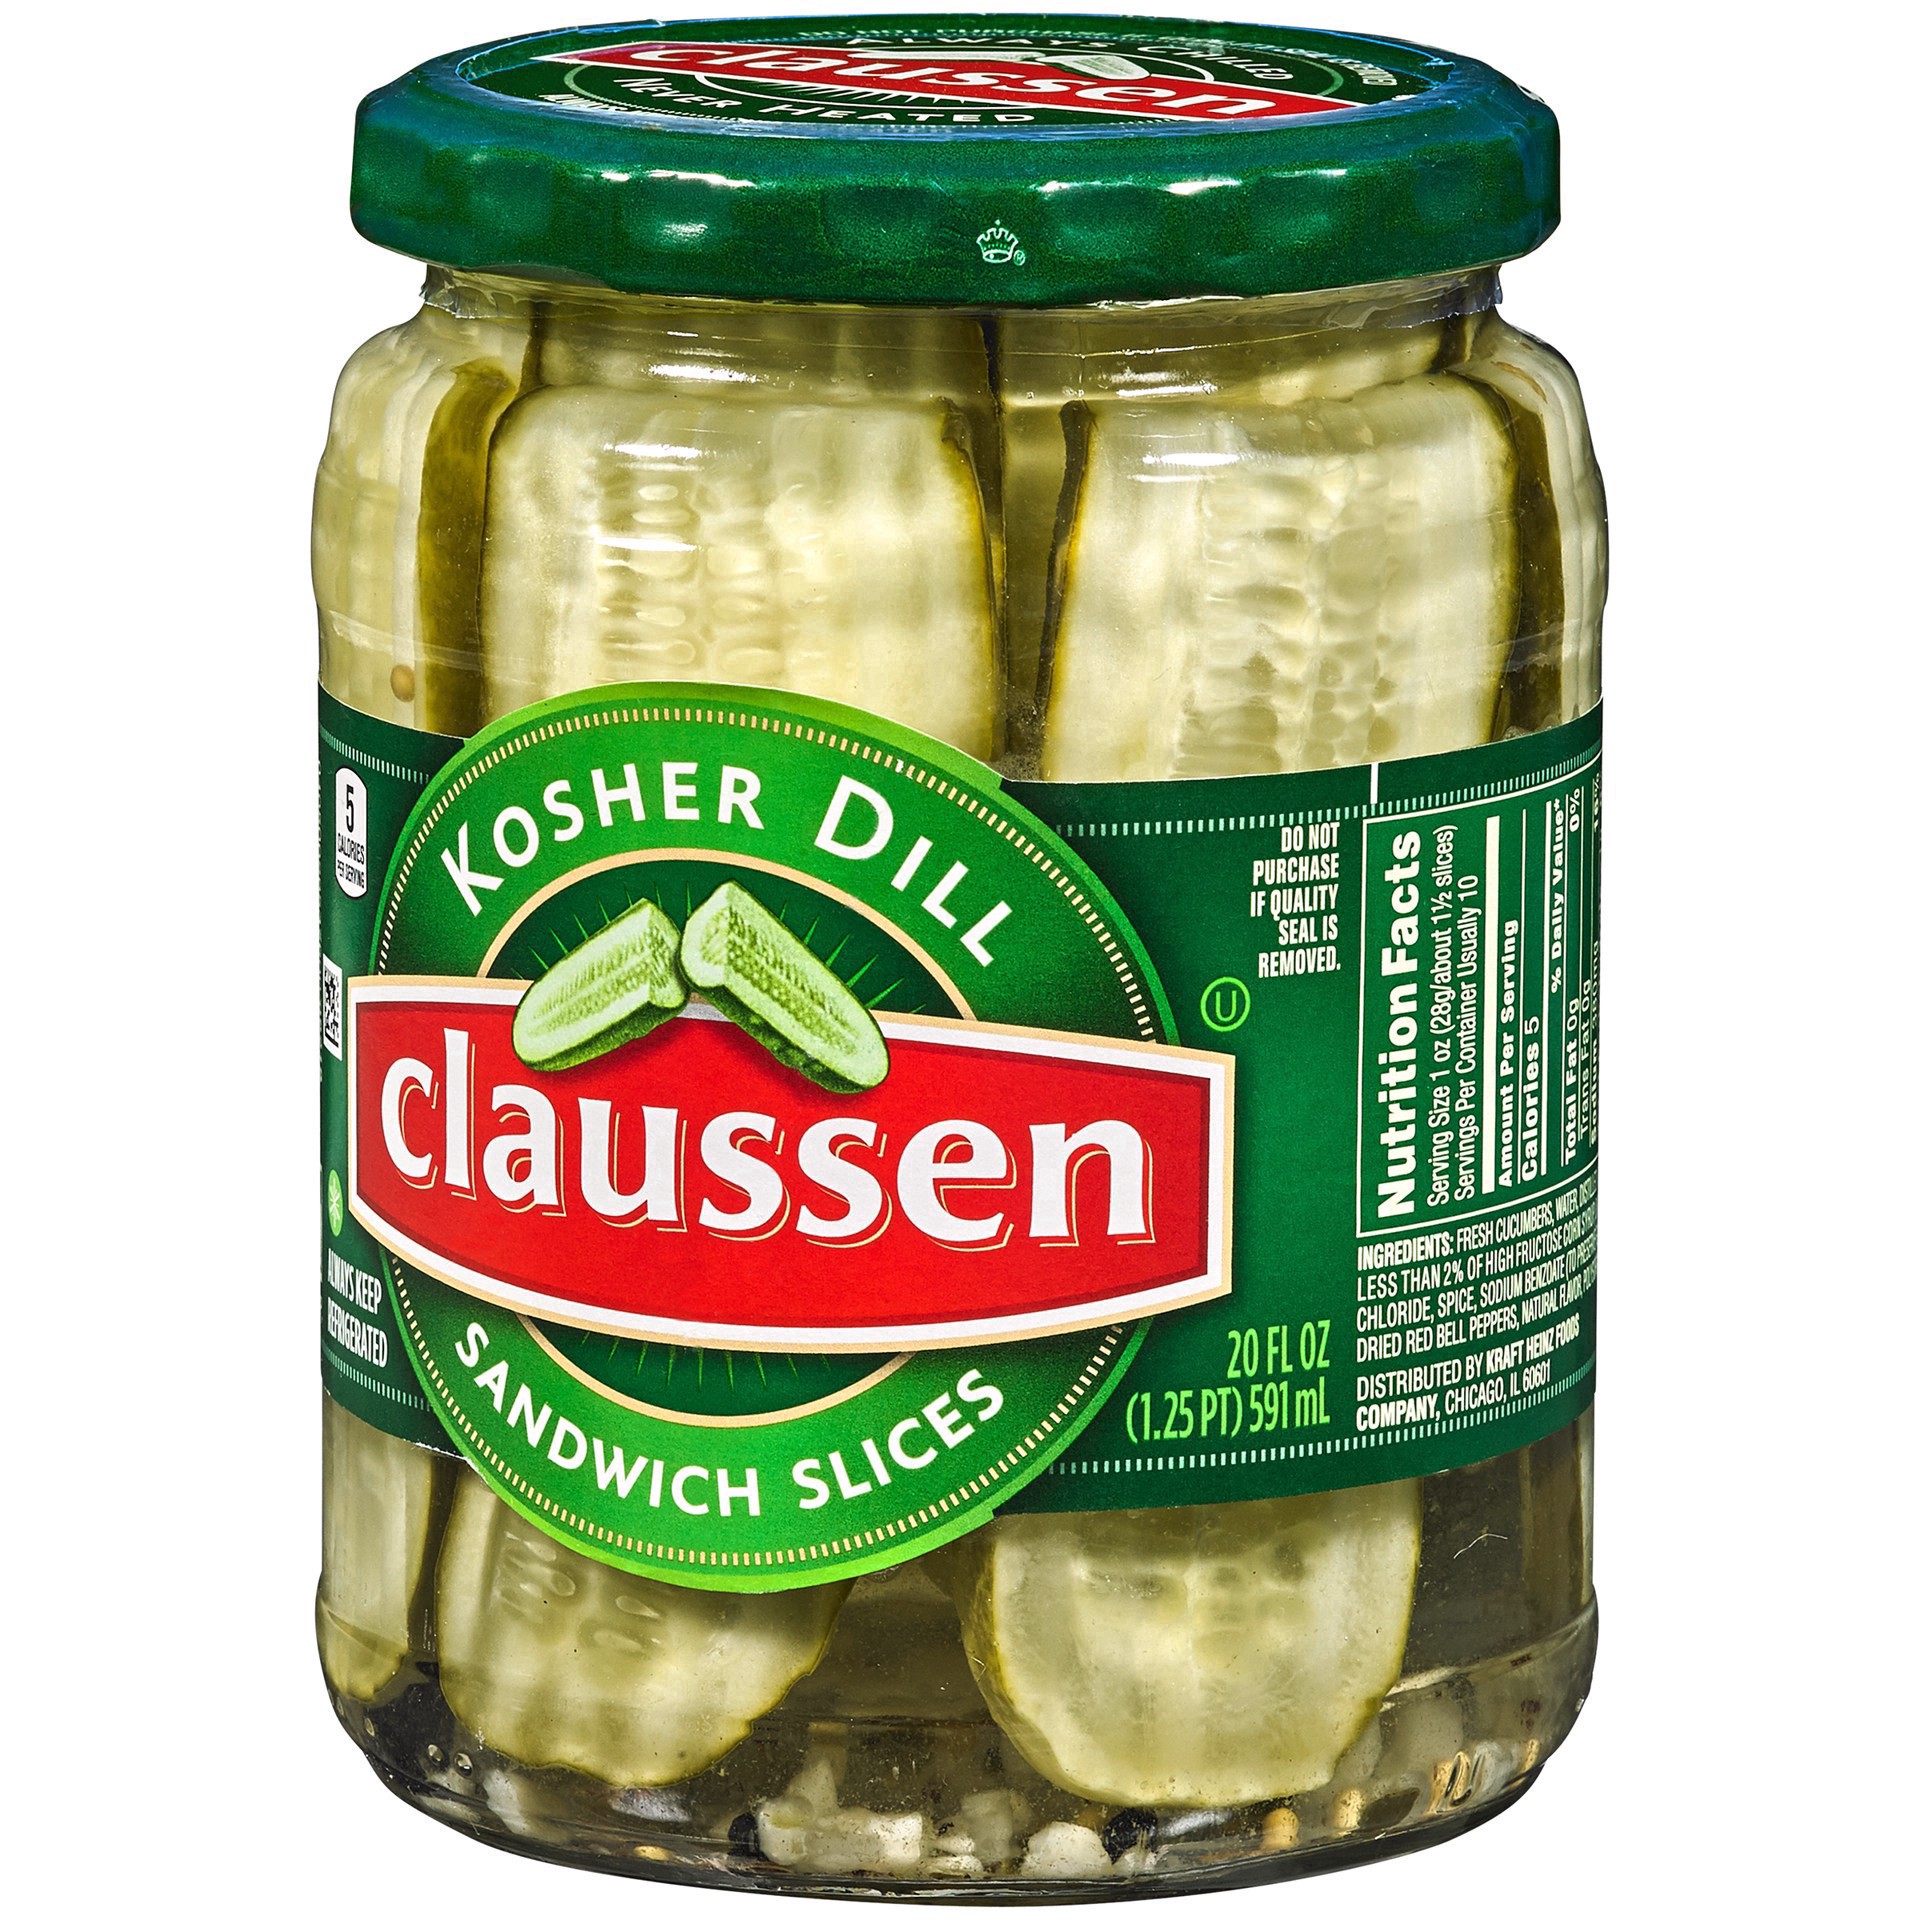 slide 136 of 144, Claussen Kosher Dill Pickle Sandwich Slices, 20 fl. oz. Jar, 20 fl oz